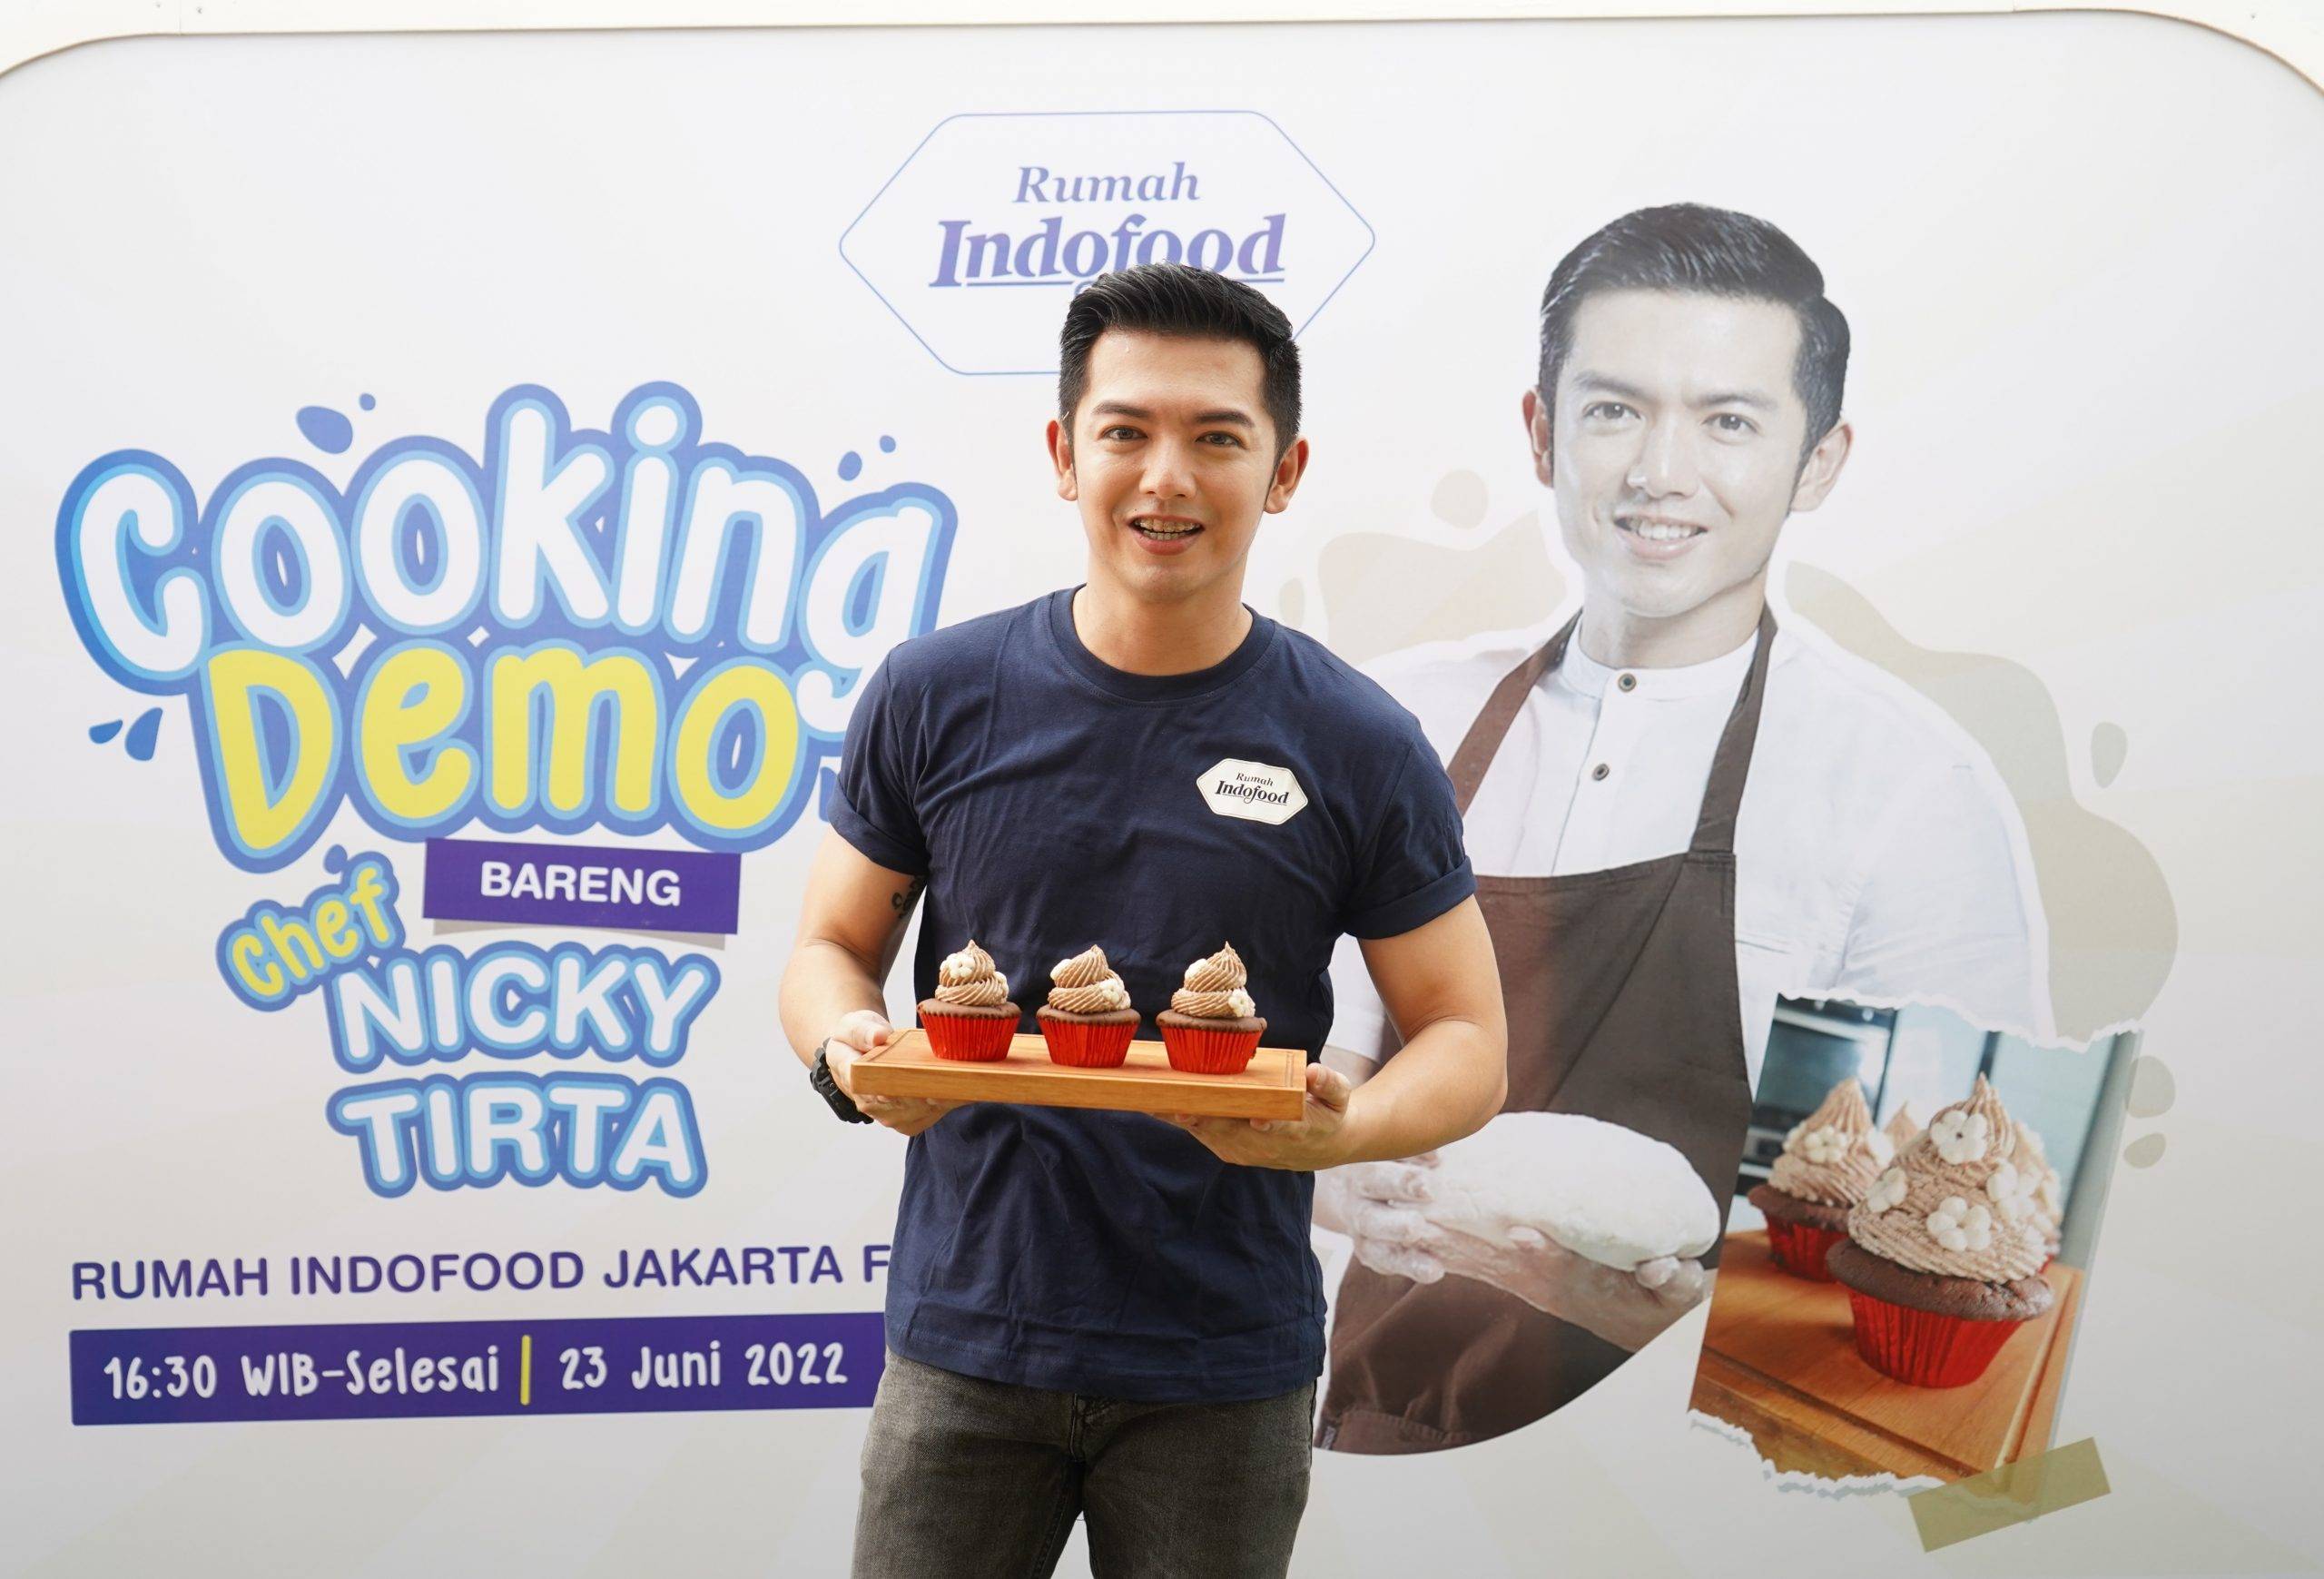 Baru di Minggu Ini: Cooking Demo Indofood, Kolaborasi V-Soy, Hingga Subway di Soekarno-Hatta